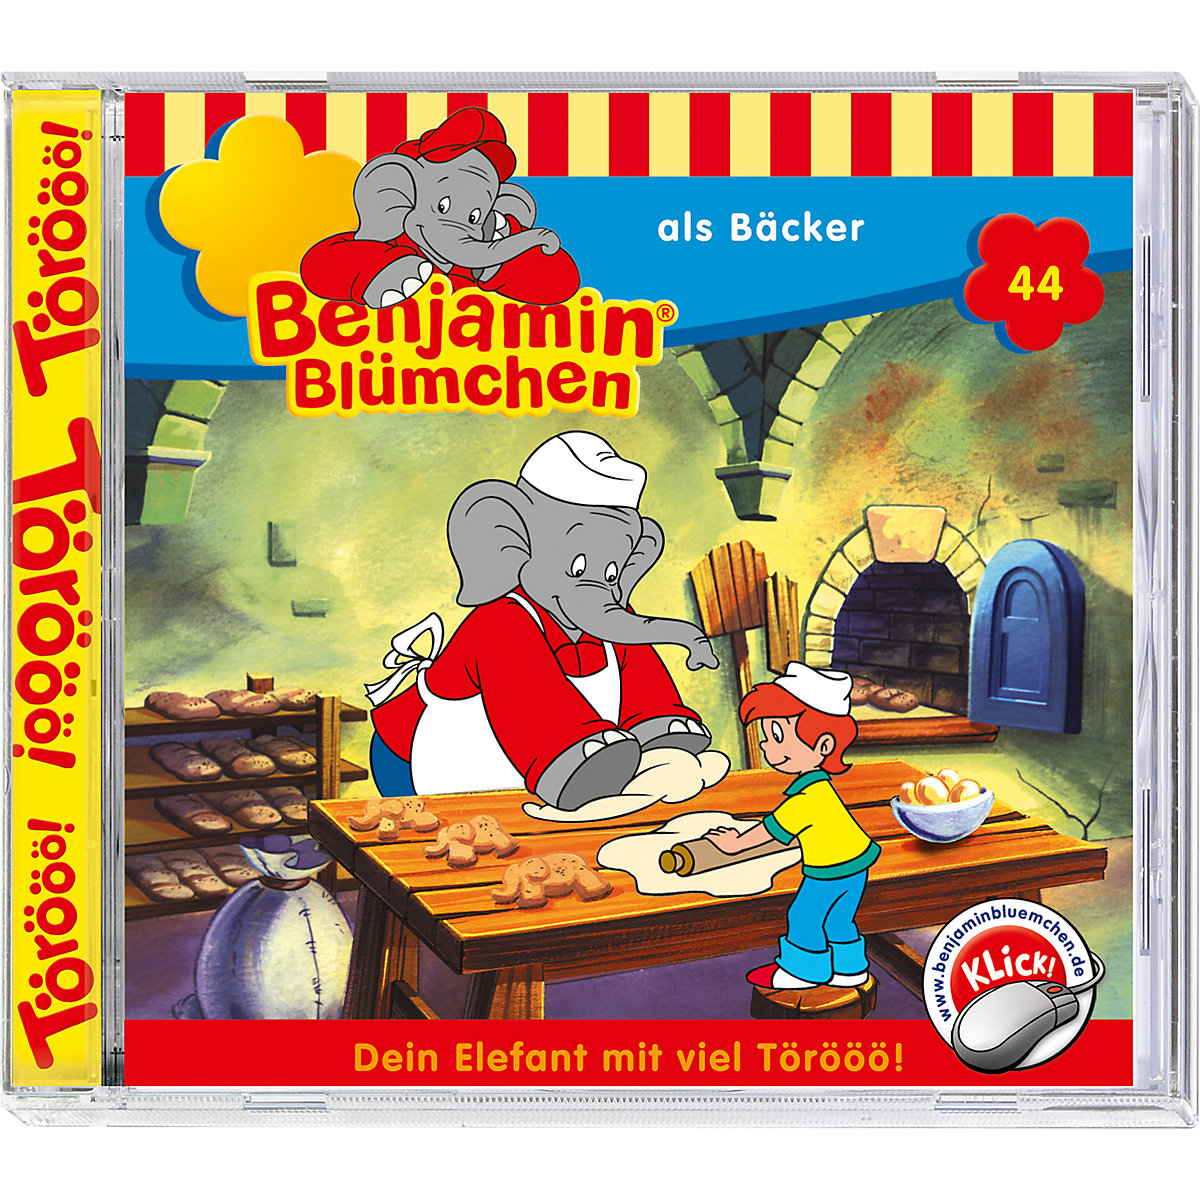 CD Benjamin Blümchen 44 als Bäcker